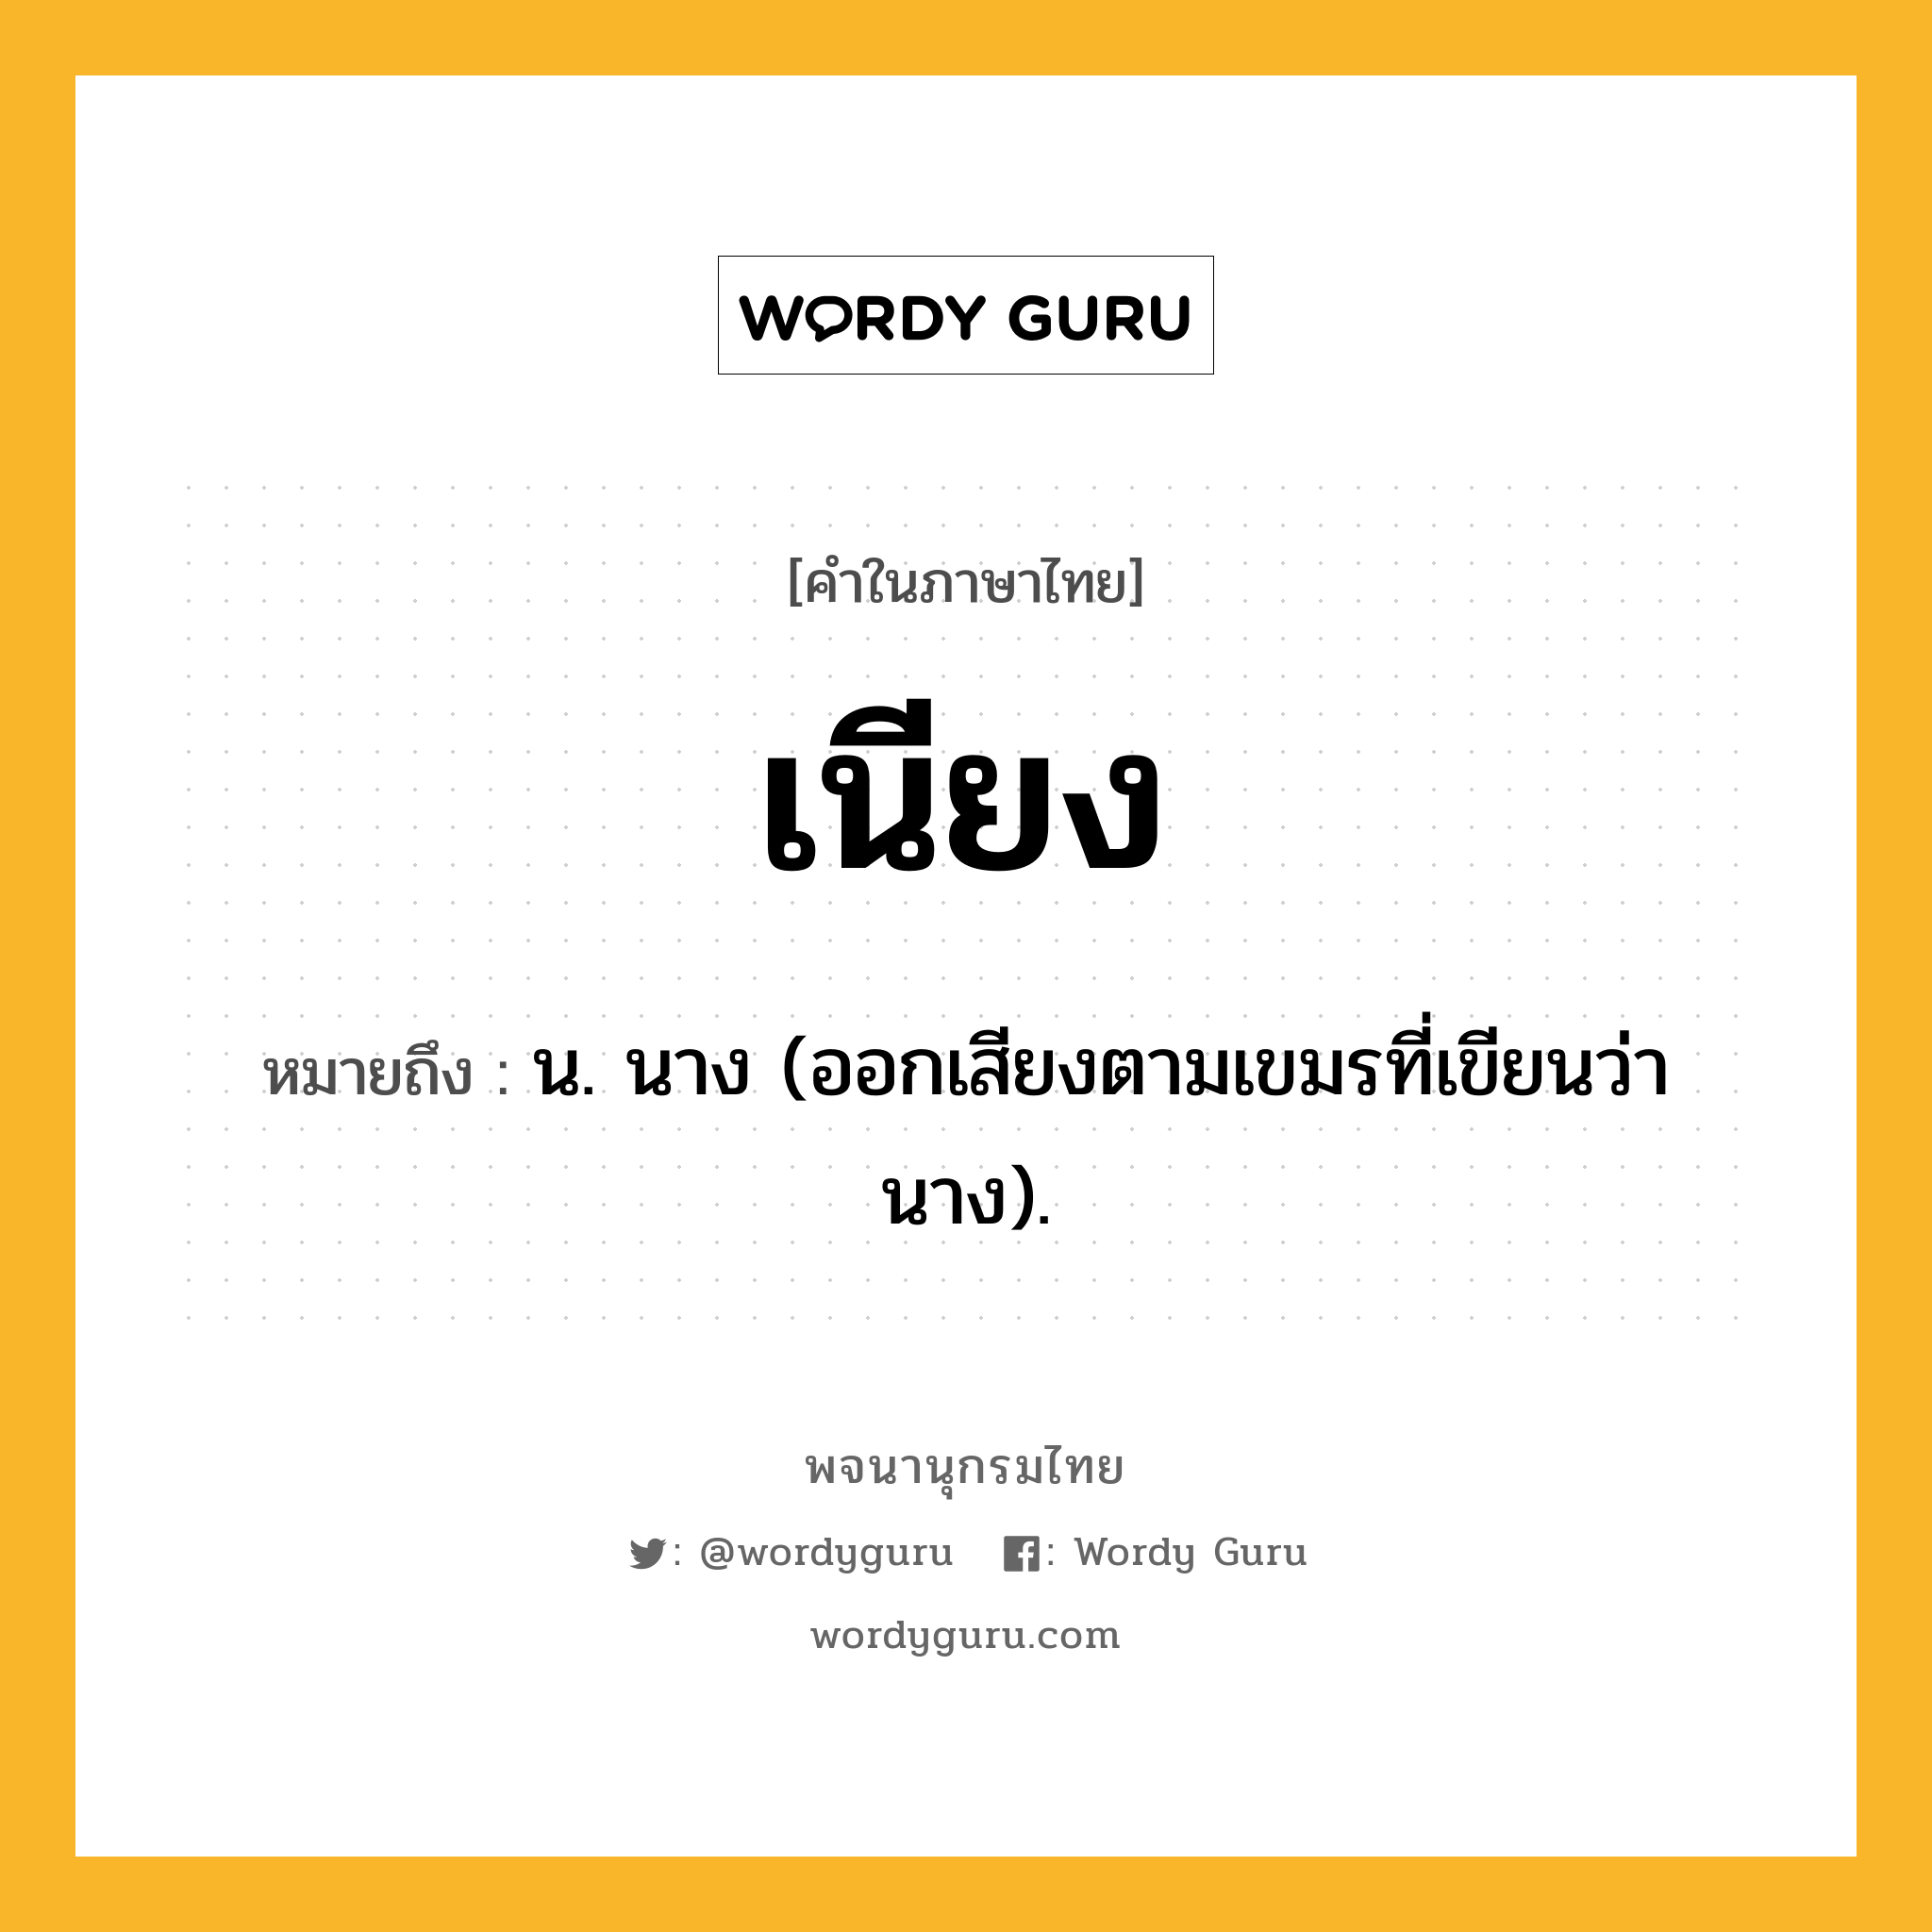 เนียง หมายถึงอะไร?, คำในภาษาไทย เนียง หมายถึง น. นาง (ออกเสียงตามเขมรที่เขียนว่า นาง).